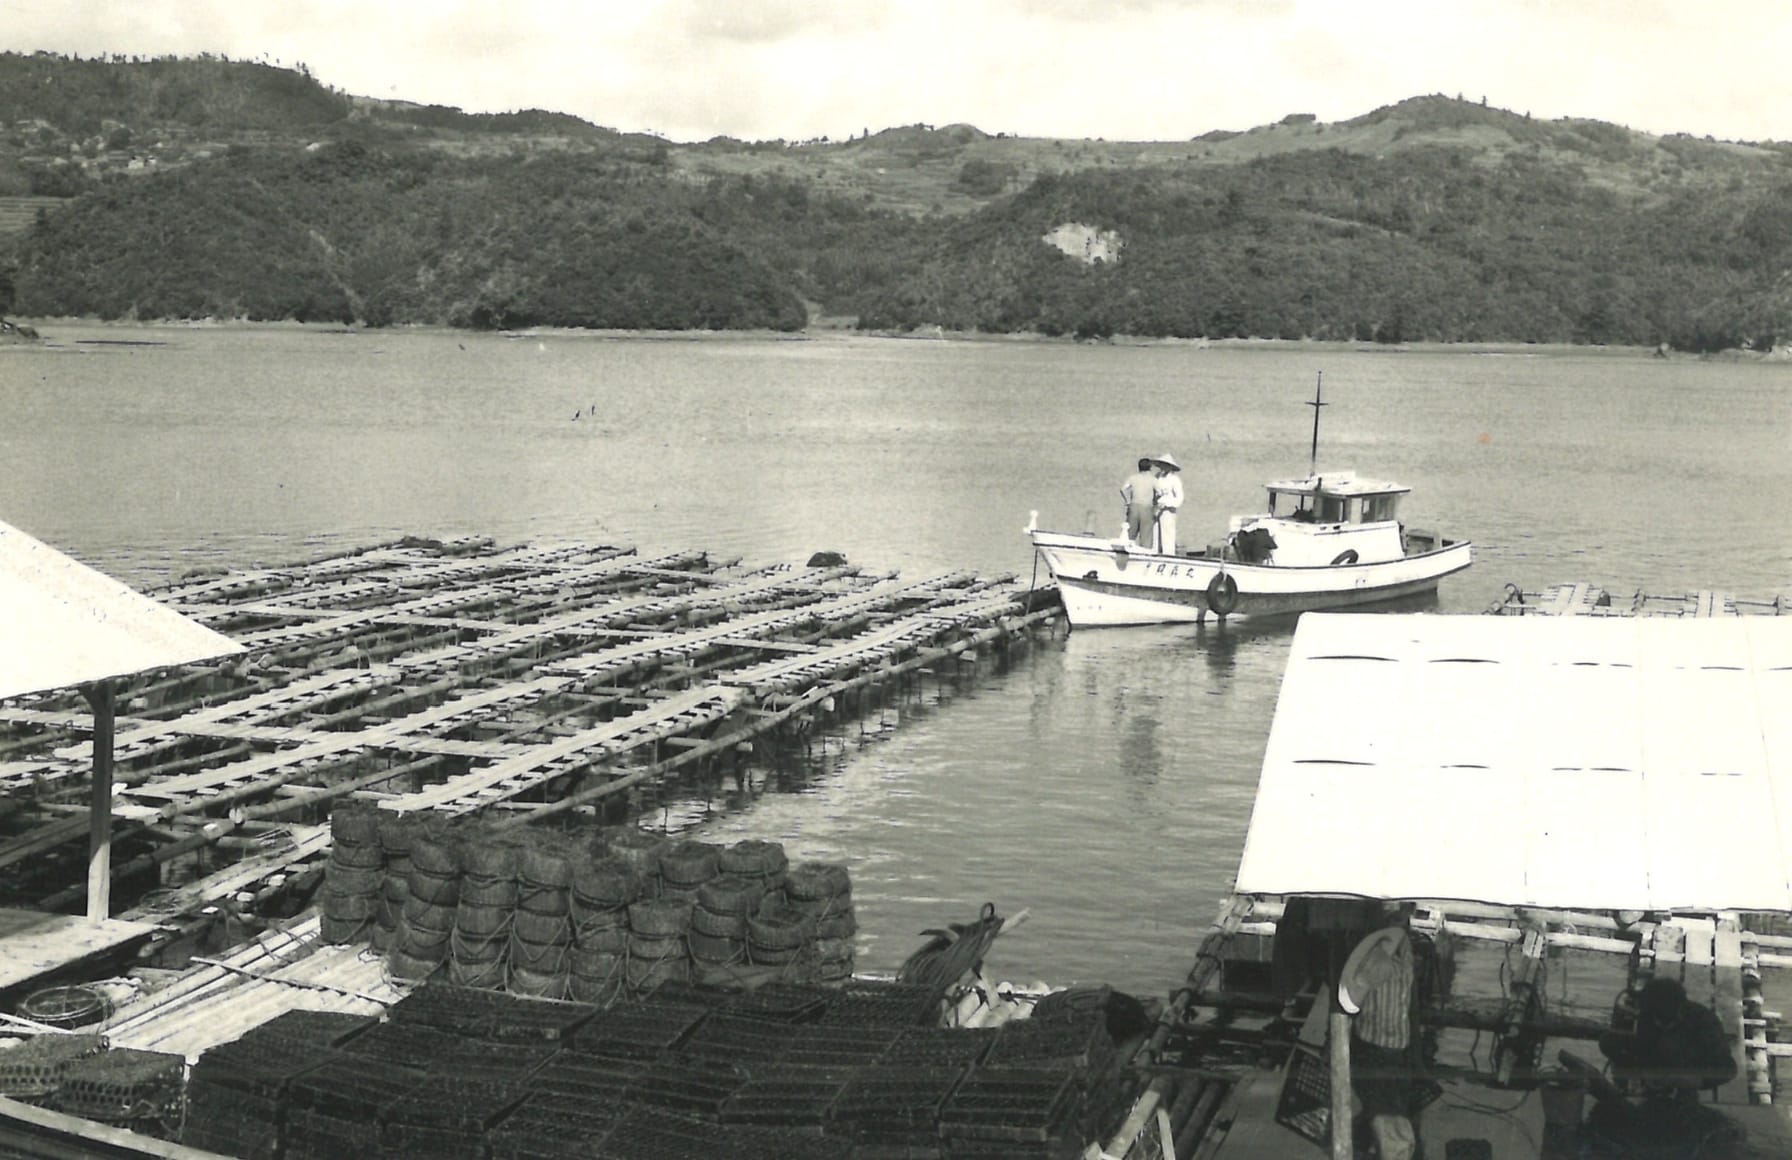 1954年 創始者 田崎俊作は神戸市で養殖真珠加工販売業を開始しました。あこや真珠の養殖をはじめ、選別・加工から販売まで一貫して自社で行い、チャレンジを恐れない革新的な経営を続けていきました。